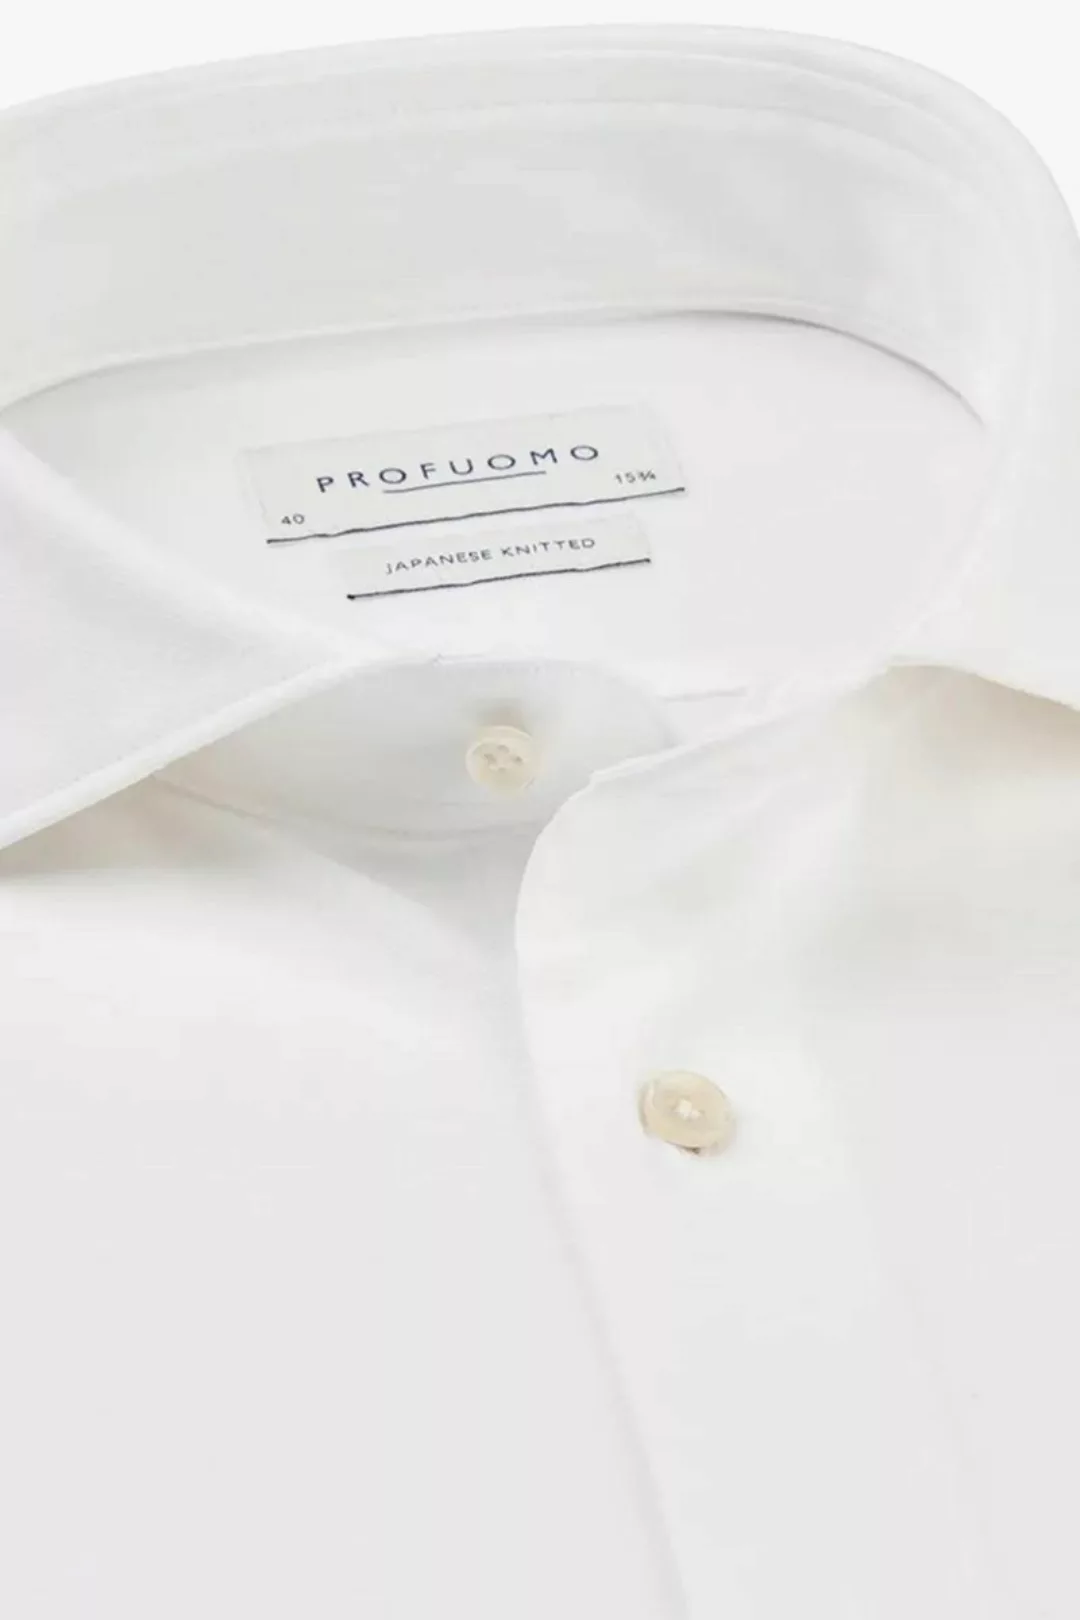 Profuomo Hemd Japanese Knitted Weiß - Größe 45 günstig online kaufen